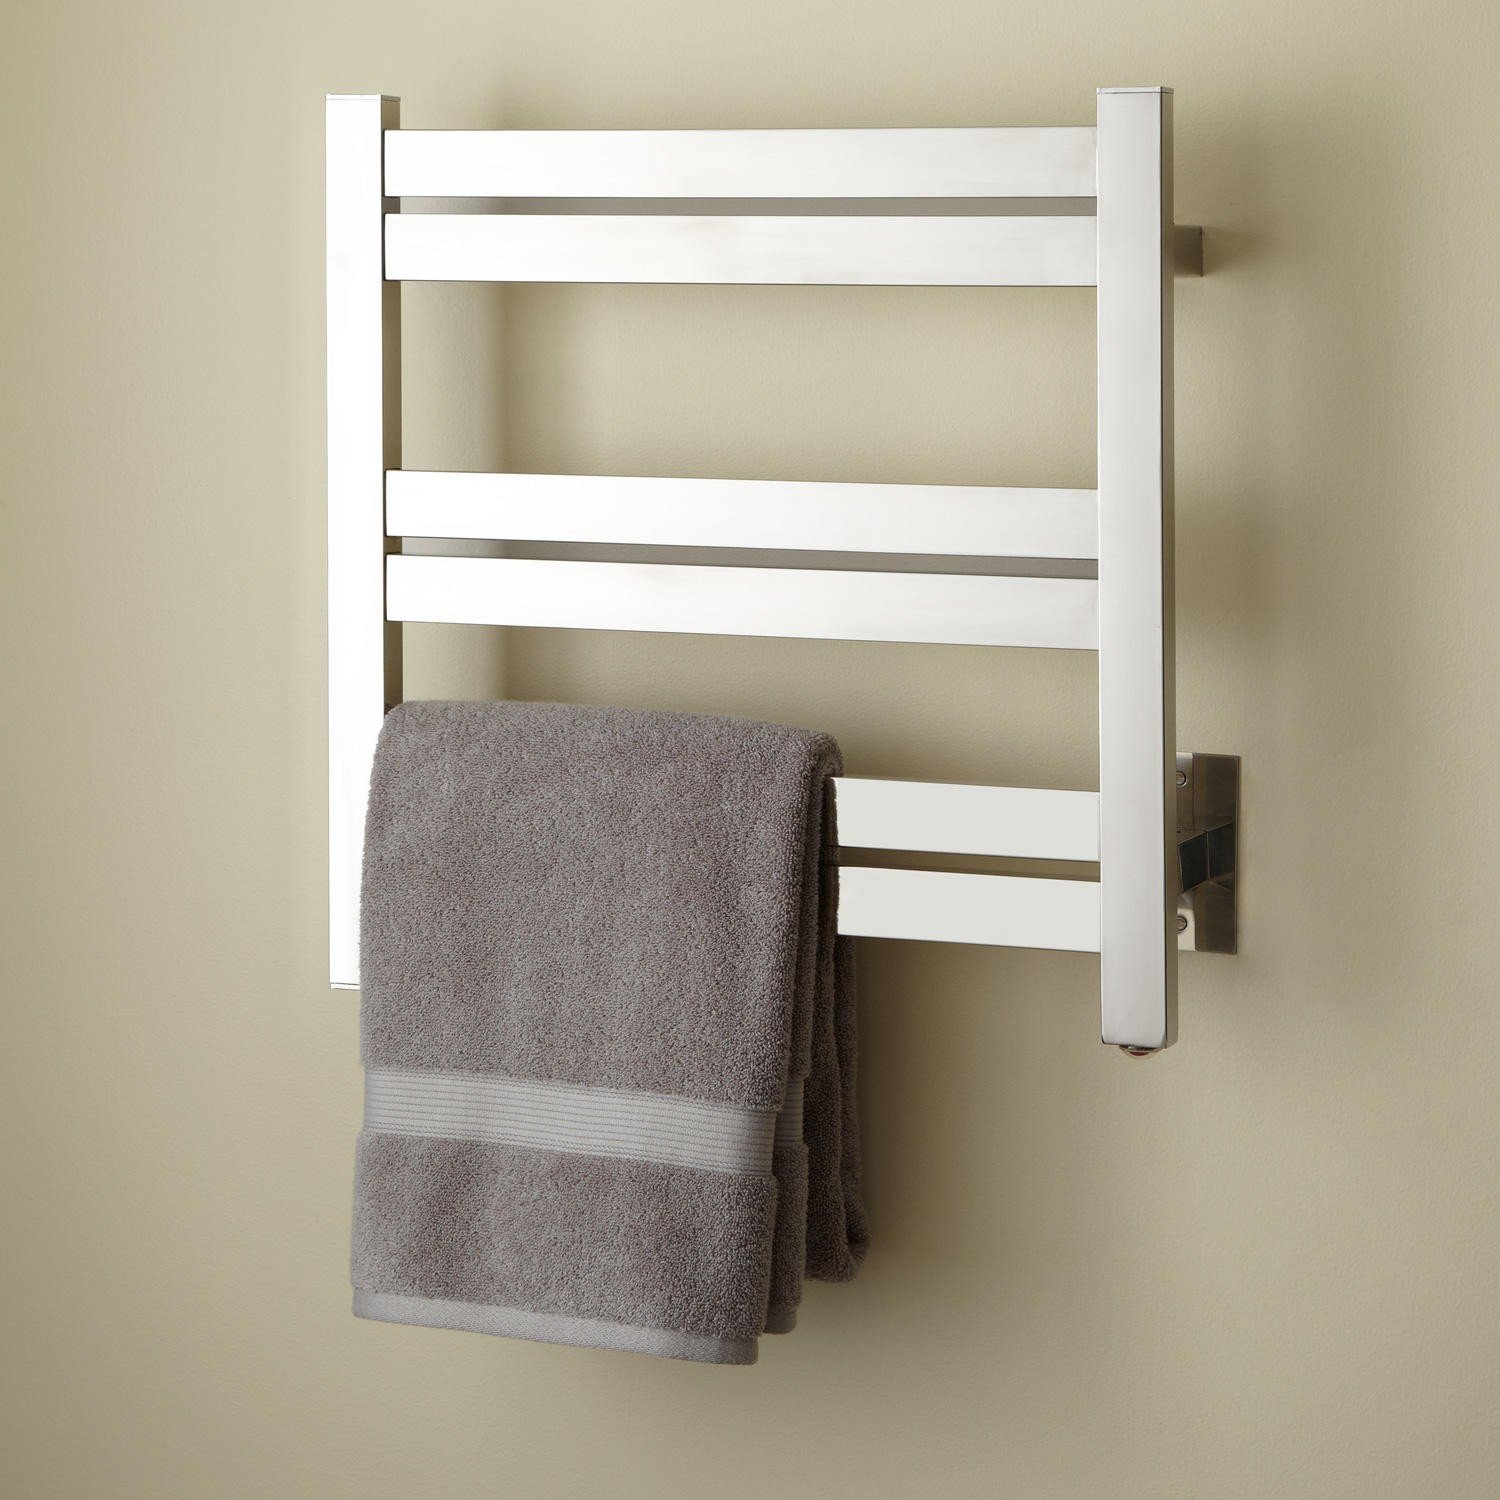 Вешалка для полотенец поворотная. TB-0009 built-in Towel Warmer полотенцесушитель. Сушилка Towel Warmer. Полотенцесушитель Towel Rack r116. Полотенцесушитель р6550 hot Towel Cabinet.